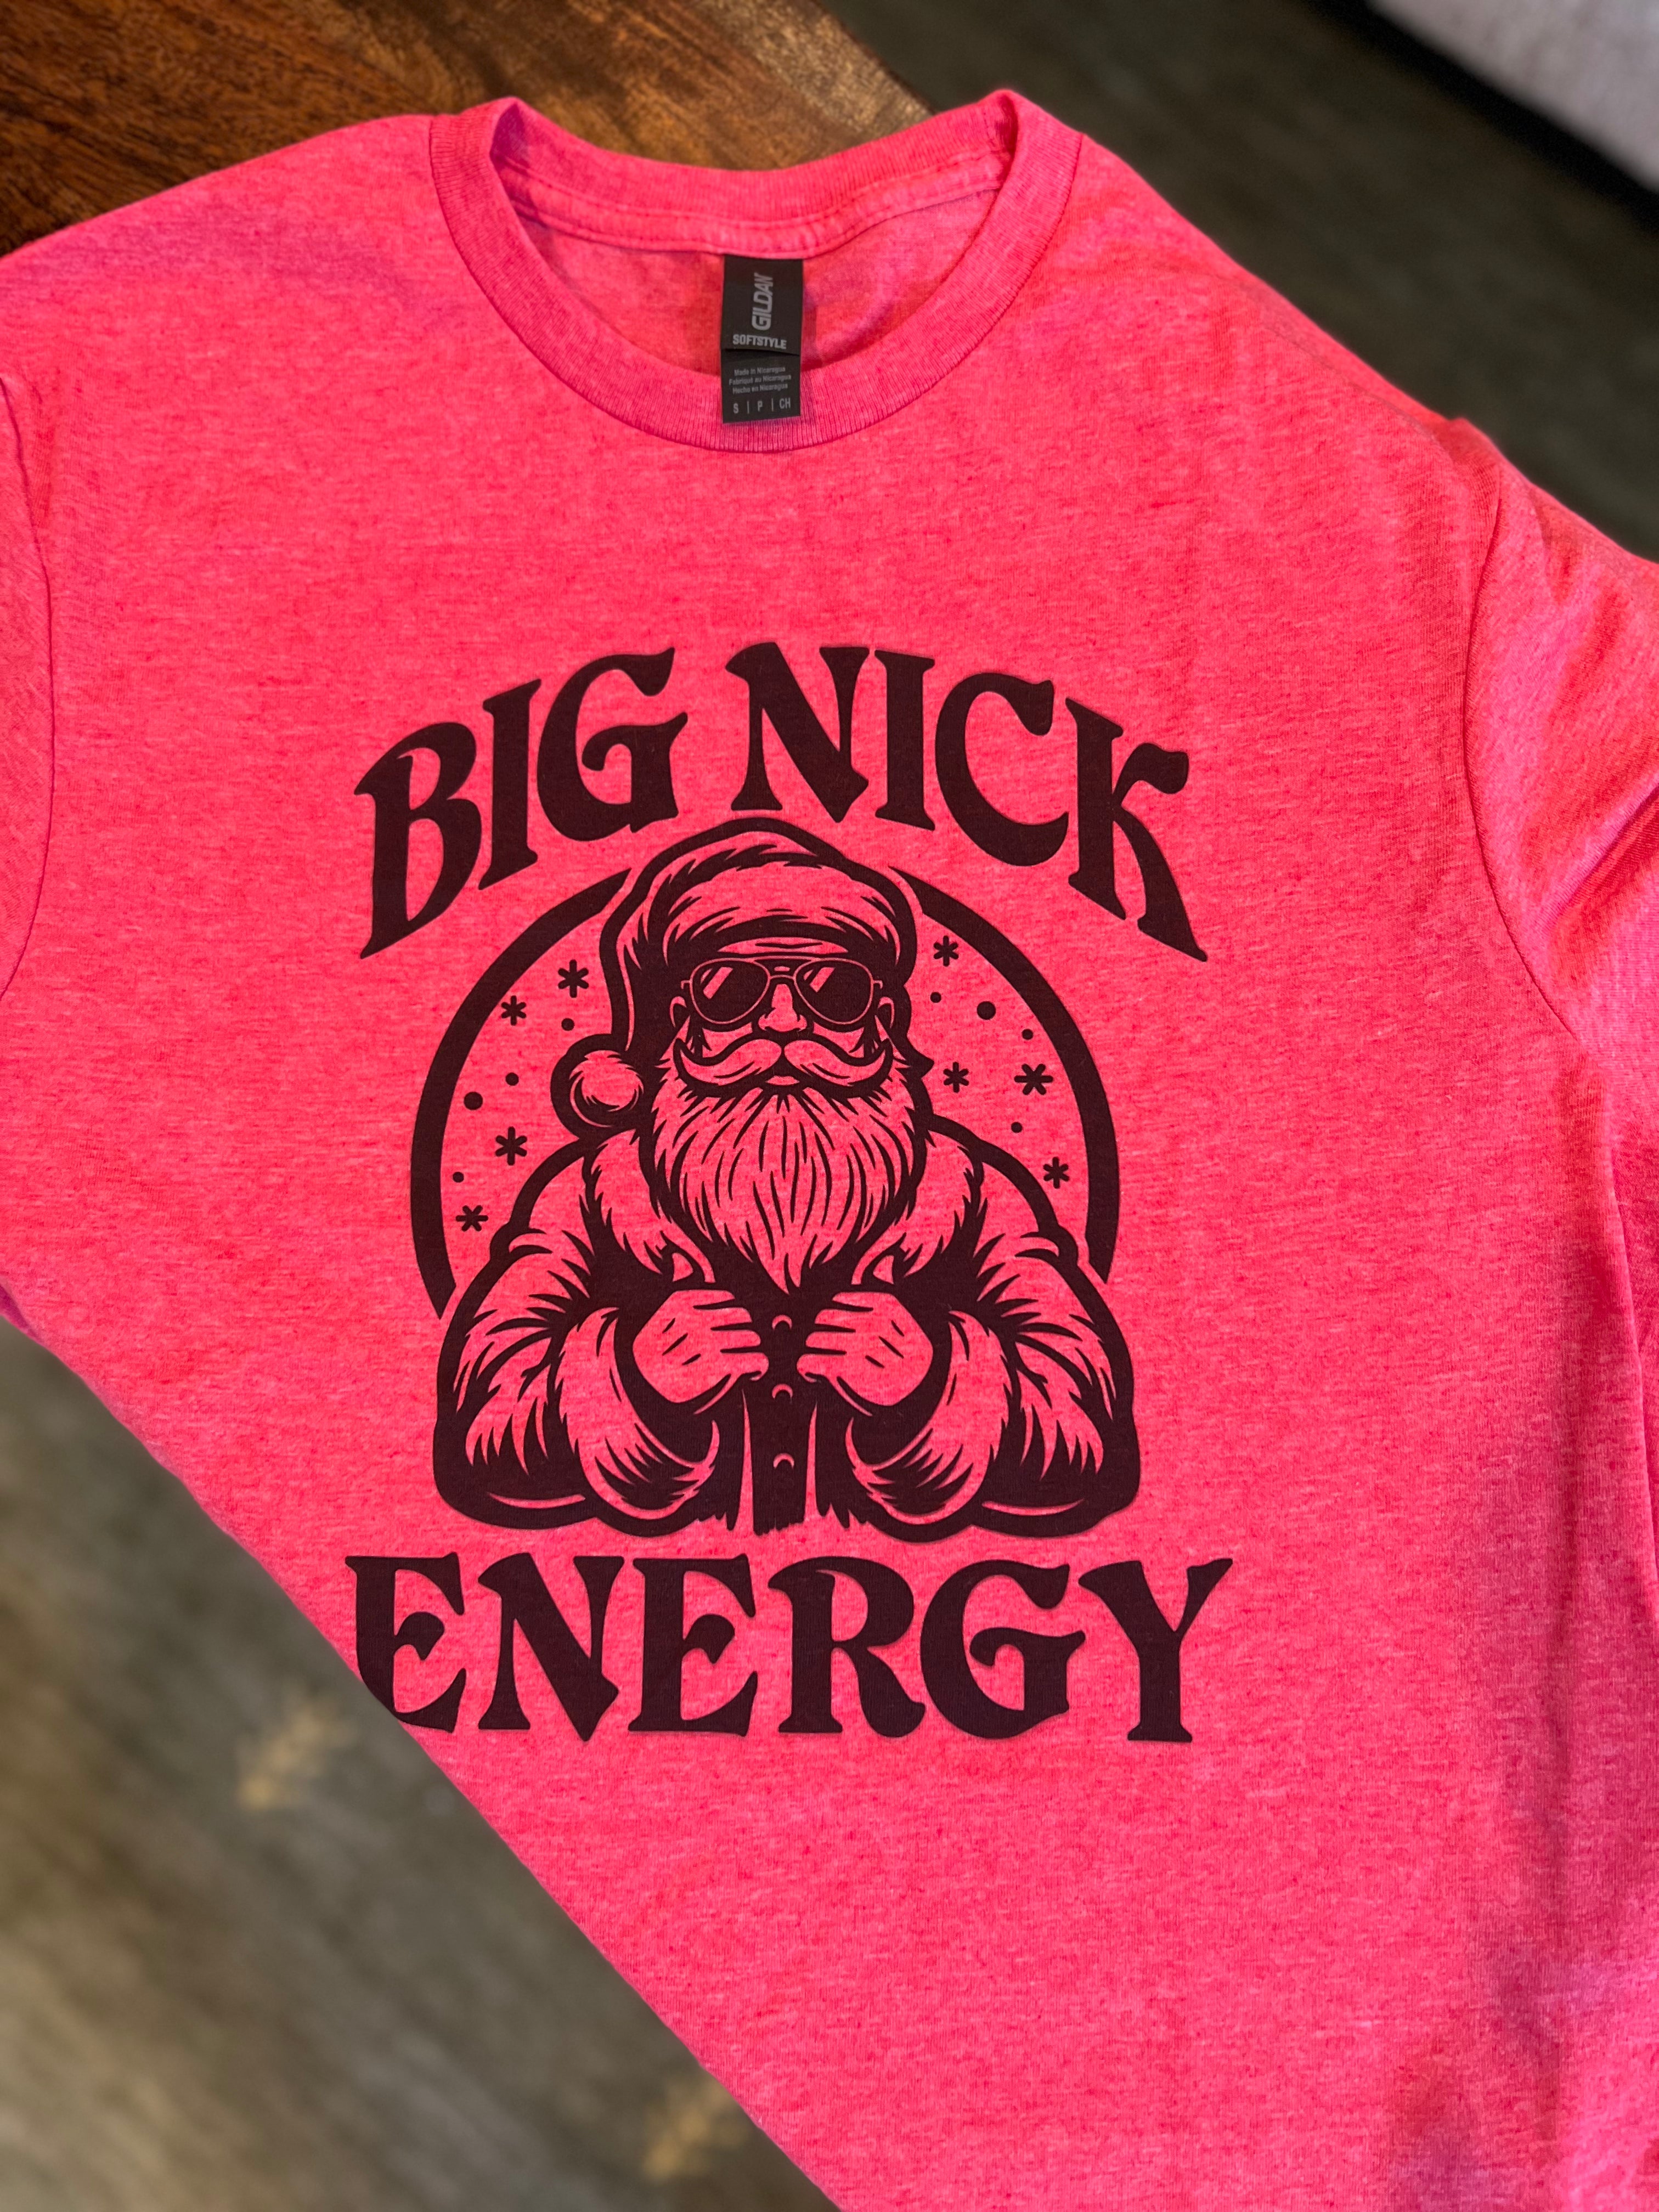 Big Nick Energy Tee